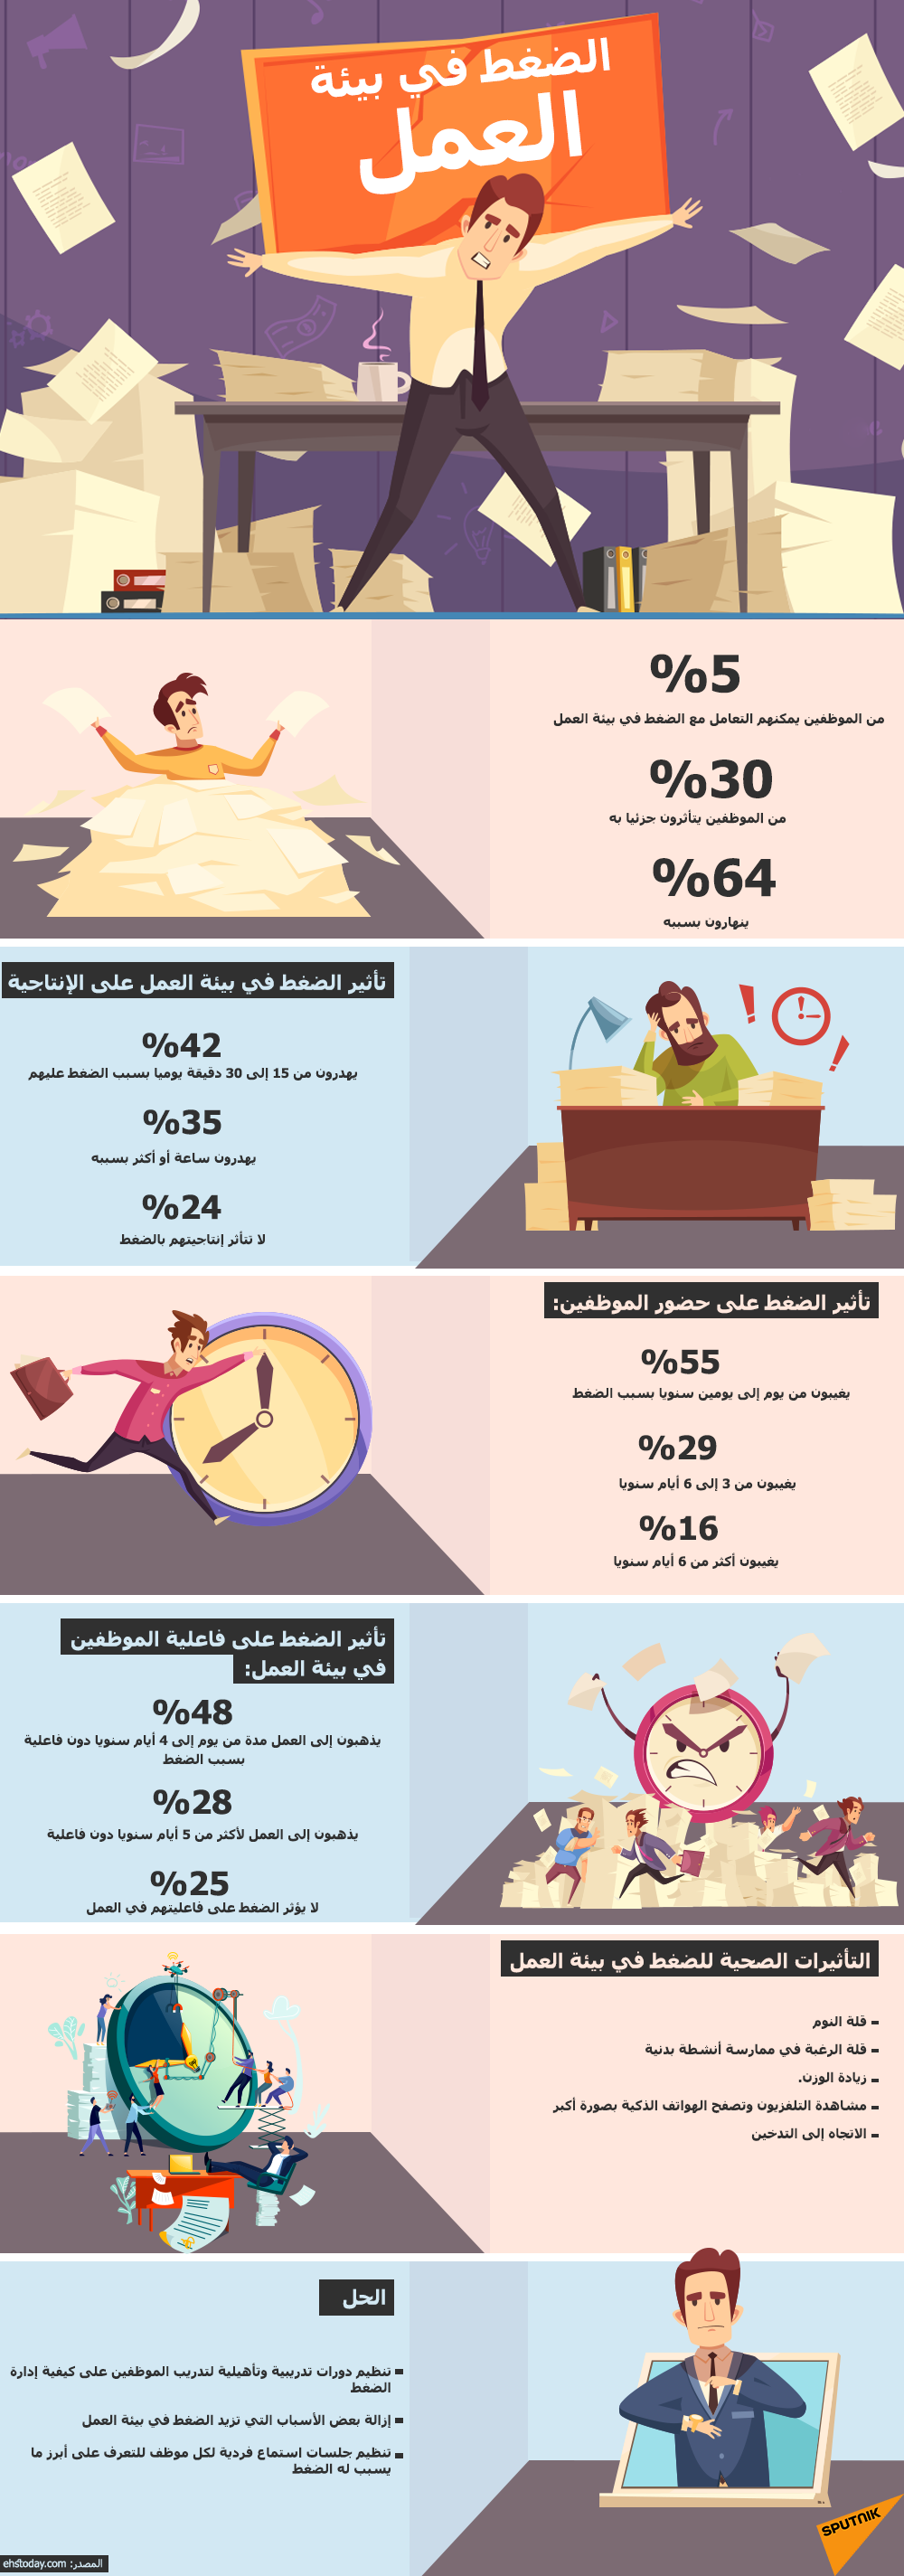 الضغط في بيئة العمل - سبوتنيك عربي